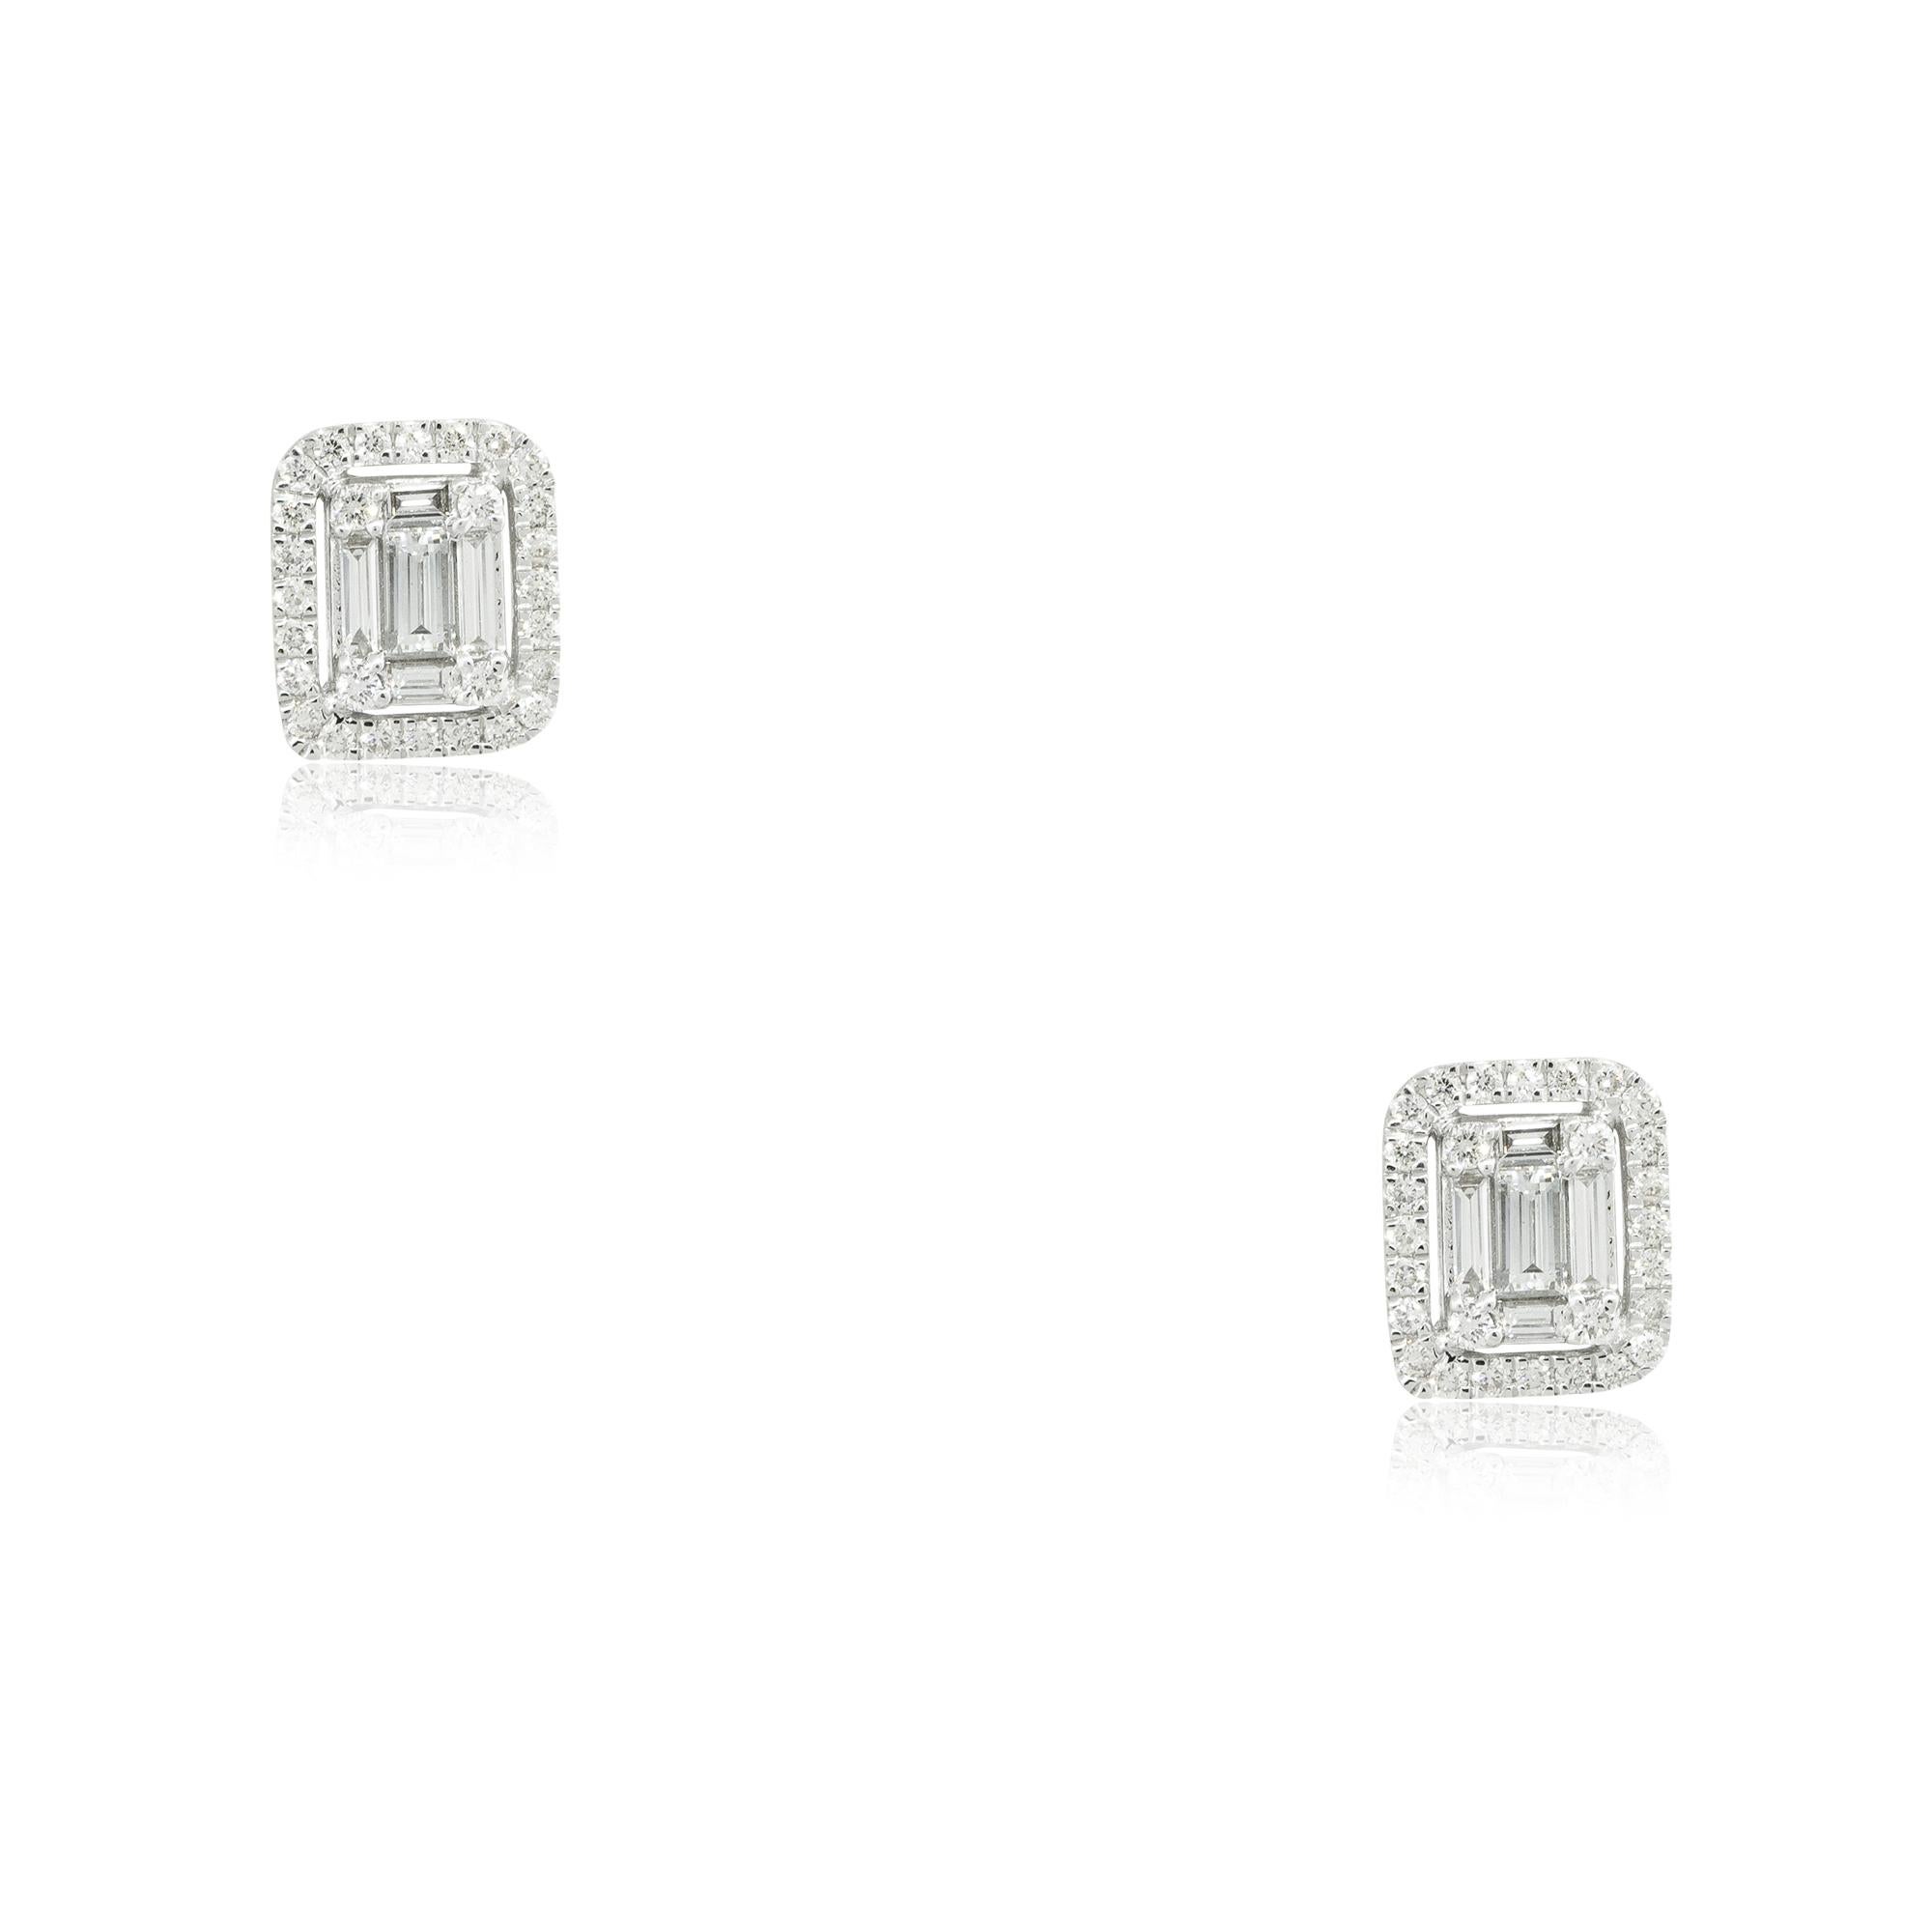 14k Weißgold 0,7ctw Smaragdschliff Diamant Rechteckige Form Ohrringe
MATERIAL: 14k Weißgold
Diamant-Details: Diamanten sind etwa 0,70ctw von Smaragd, Baguette, und Runde Brillantschliff Diamanten. In jedem Ohrring befinden sich 2 größere Diamanten